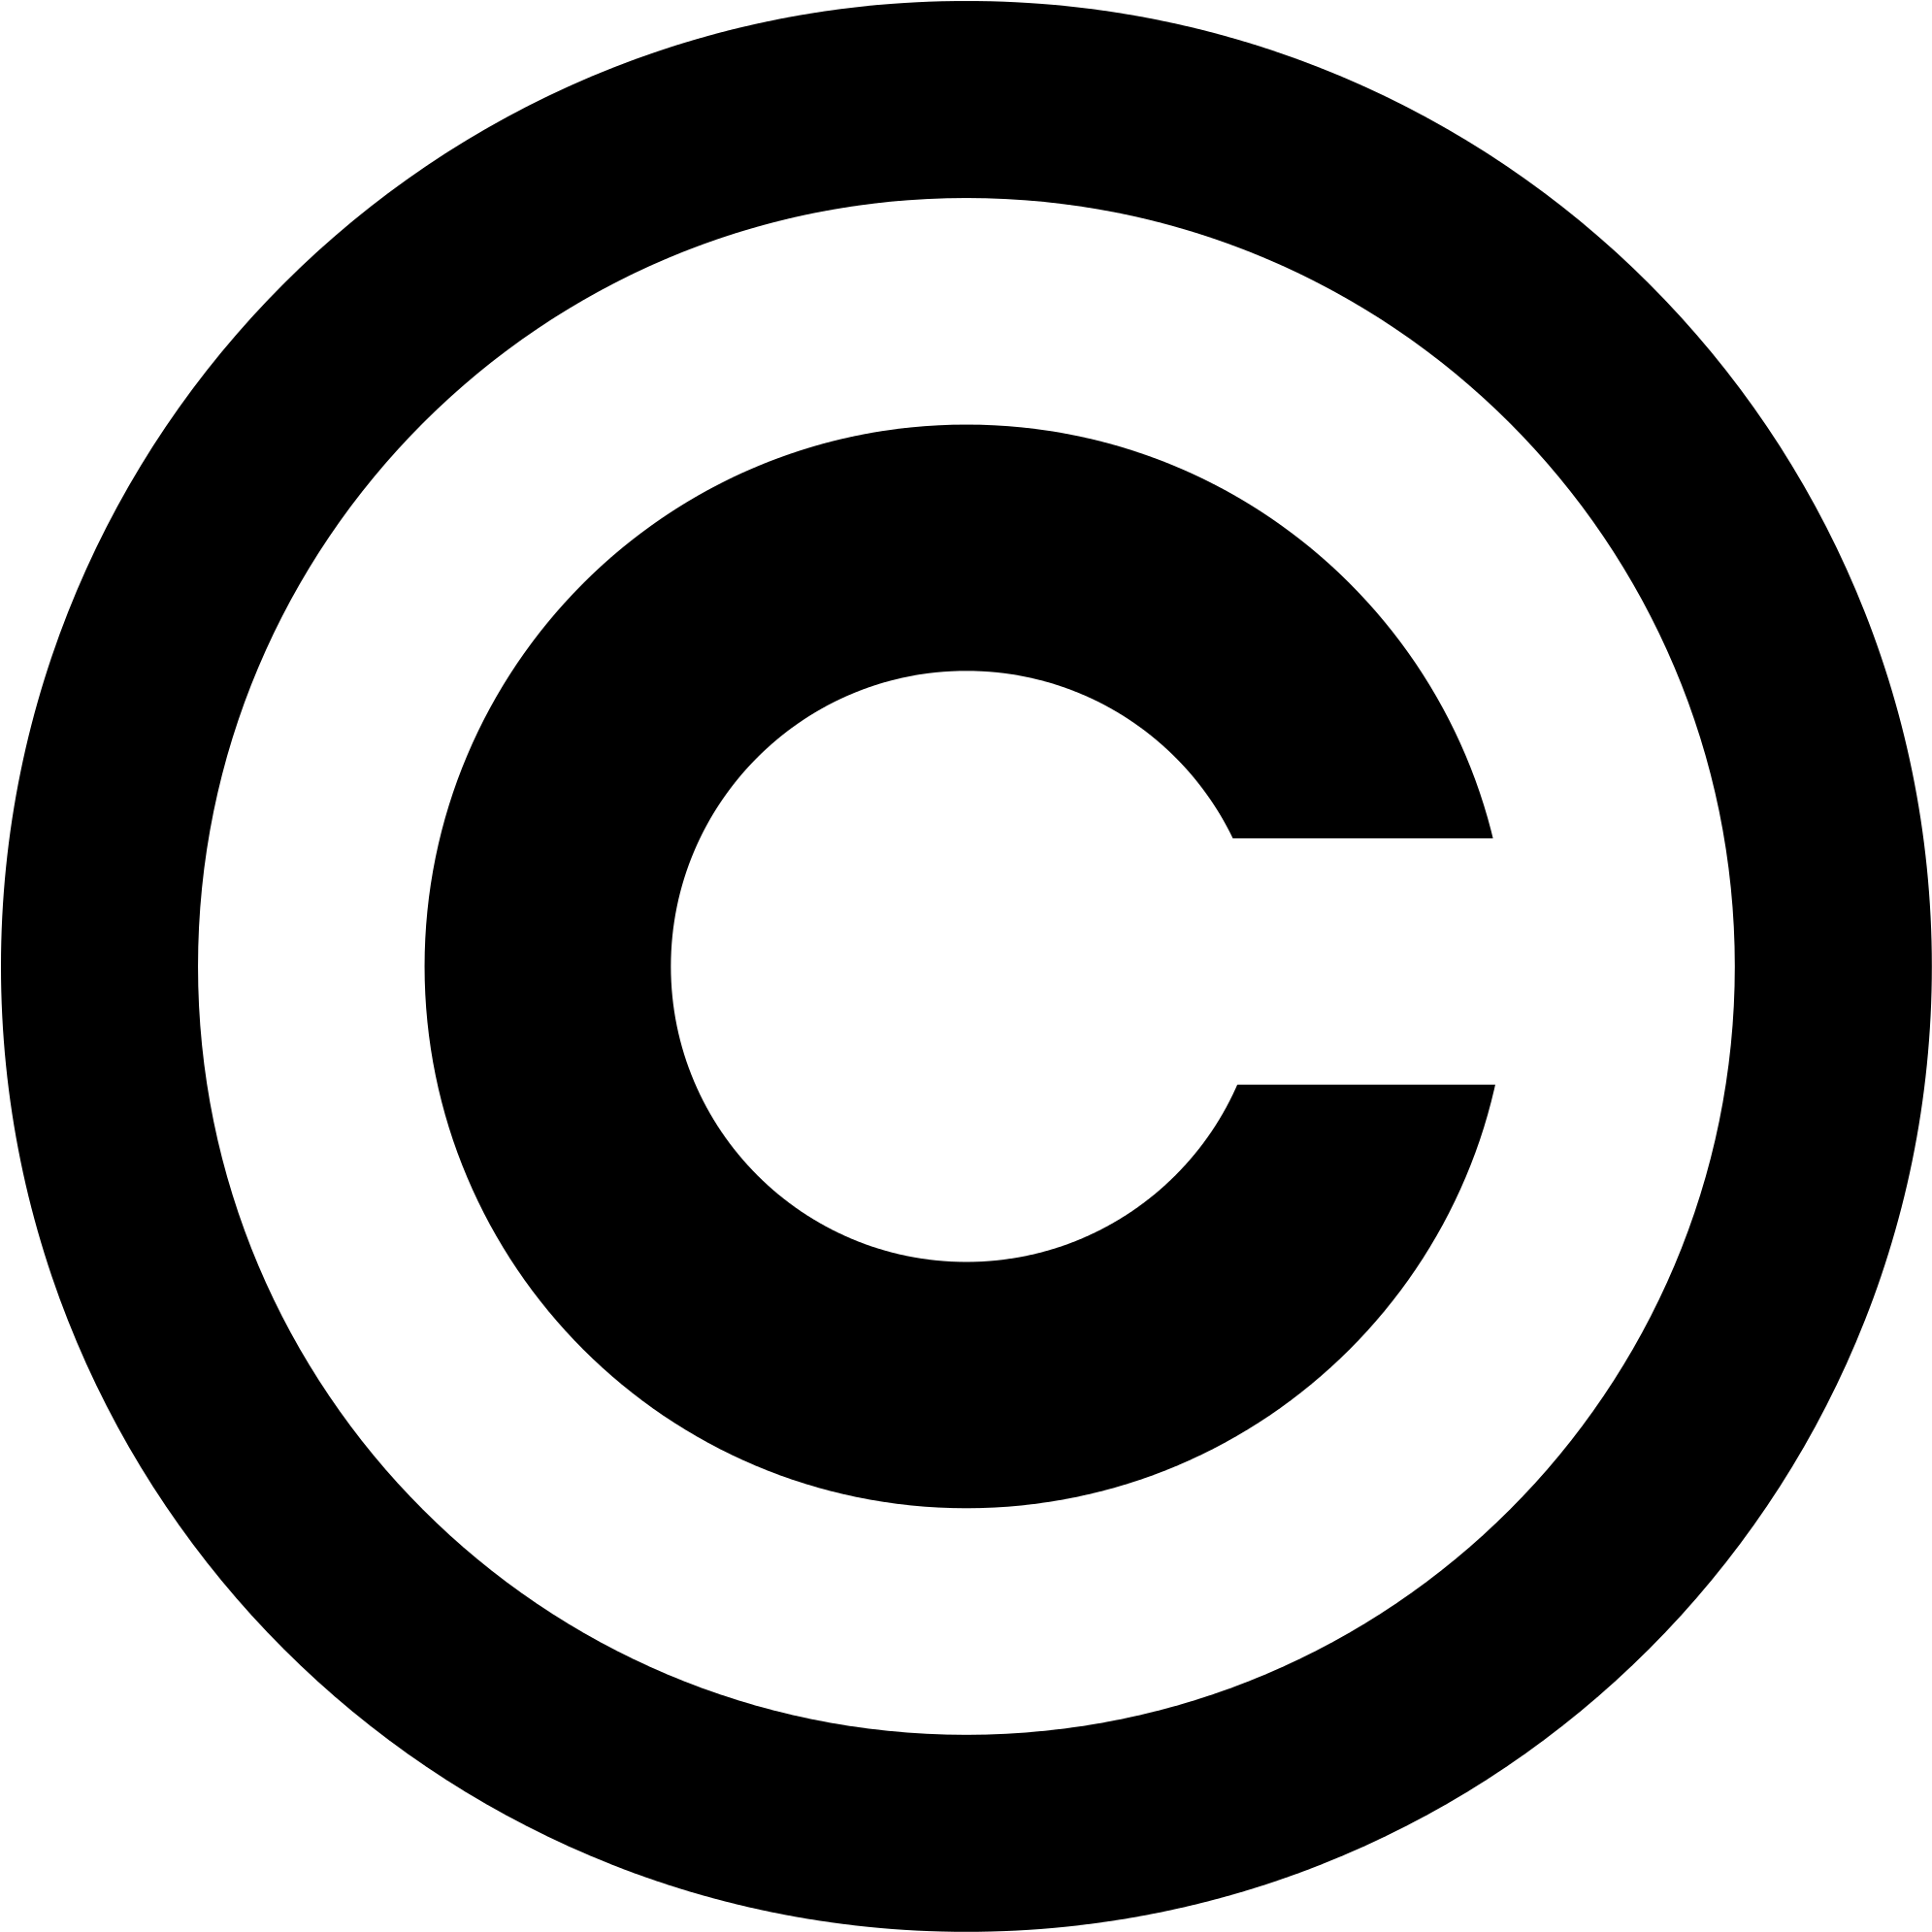 Copyright - Logo Copyright Png (2000x2000)